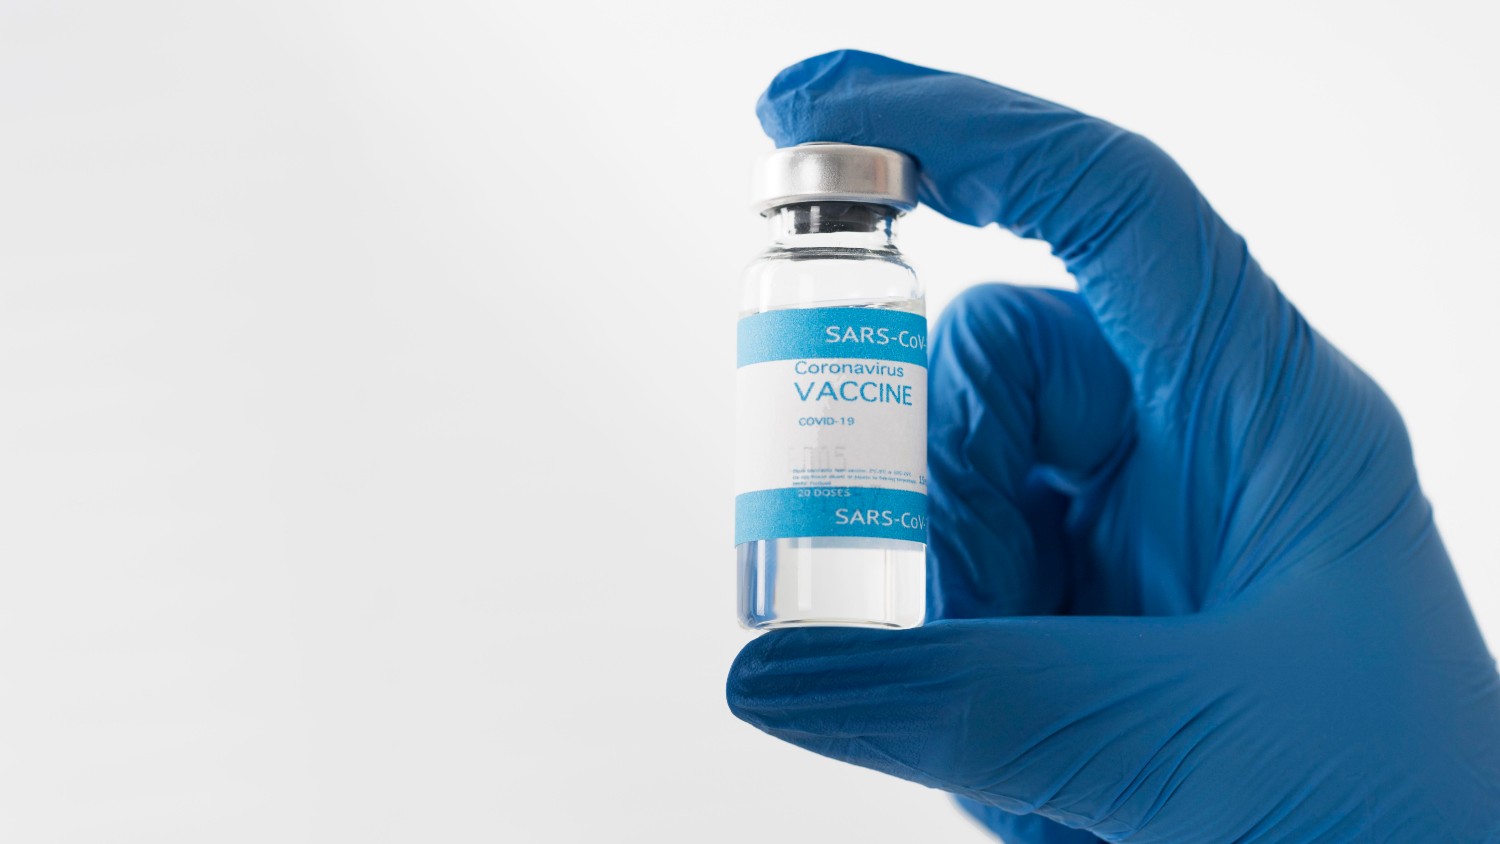 Εμβολιασμός - Αναθεωρημένες οδηγίες: Ηλικίες, ειδικές κατηγορίες, παθήσεις, αντενδείξεις, συστάσεις για εμβολιασθέντες